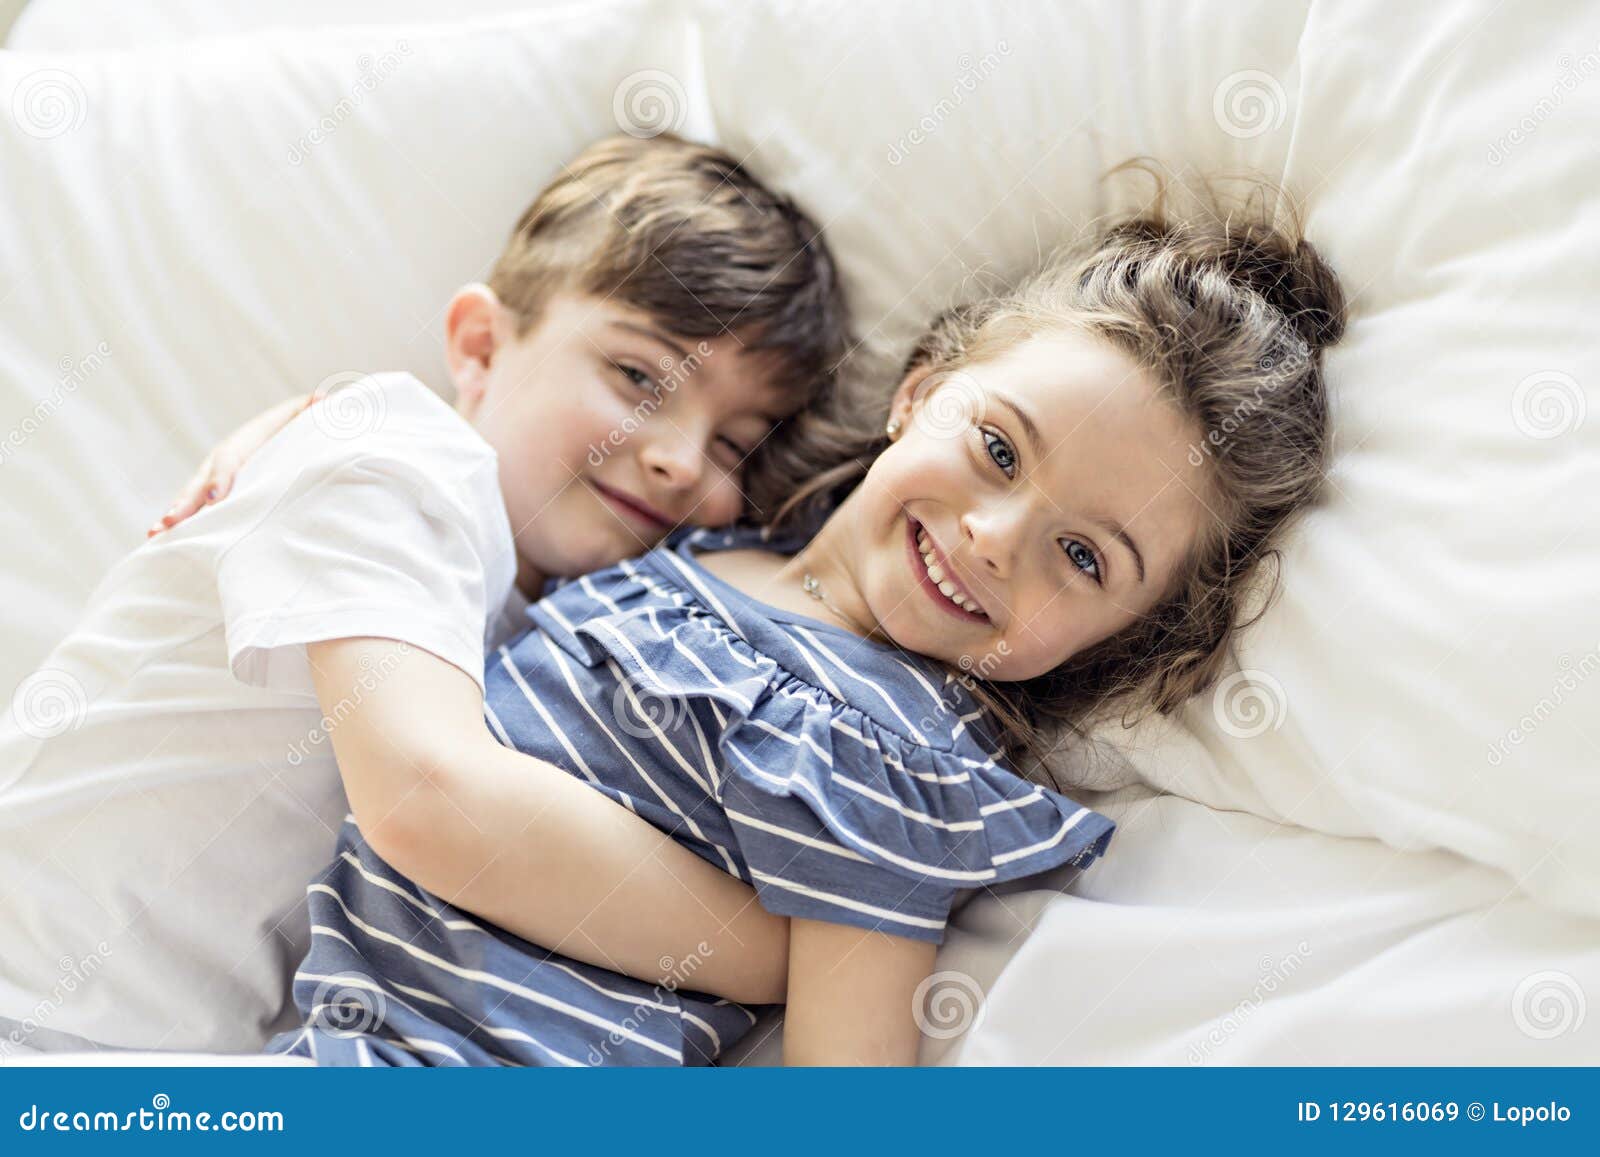 Сын с сестрой занимаются. Братик и сестричка в кровати. Фотосессия брат и сестра. С сестренкой в постели. Мальчик лежит на маме.